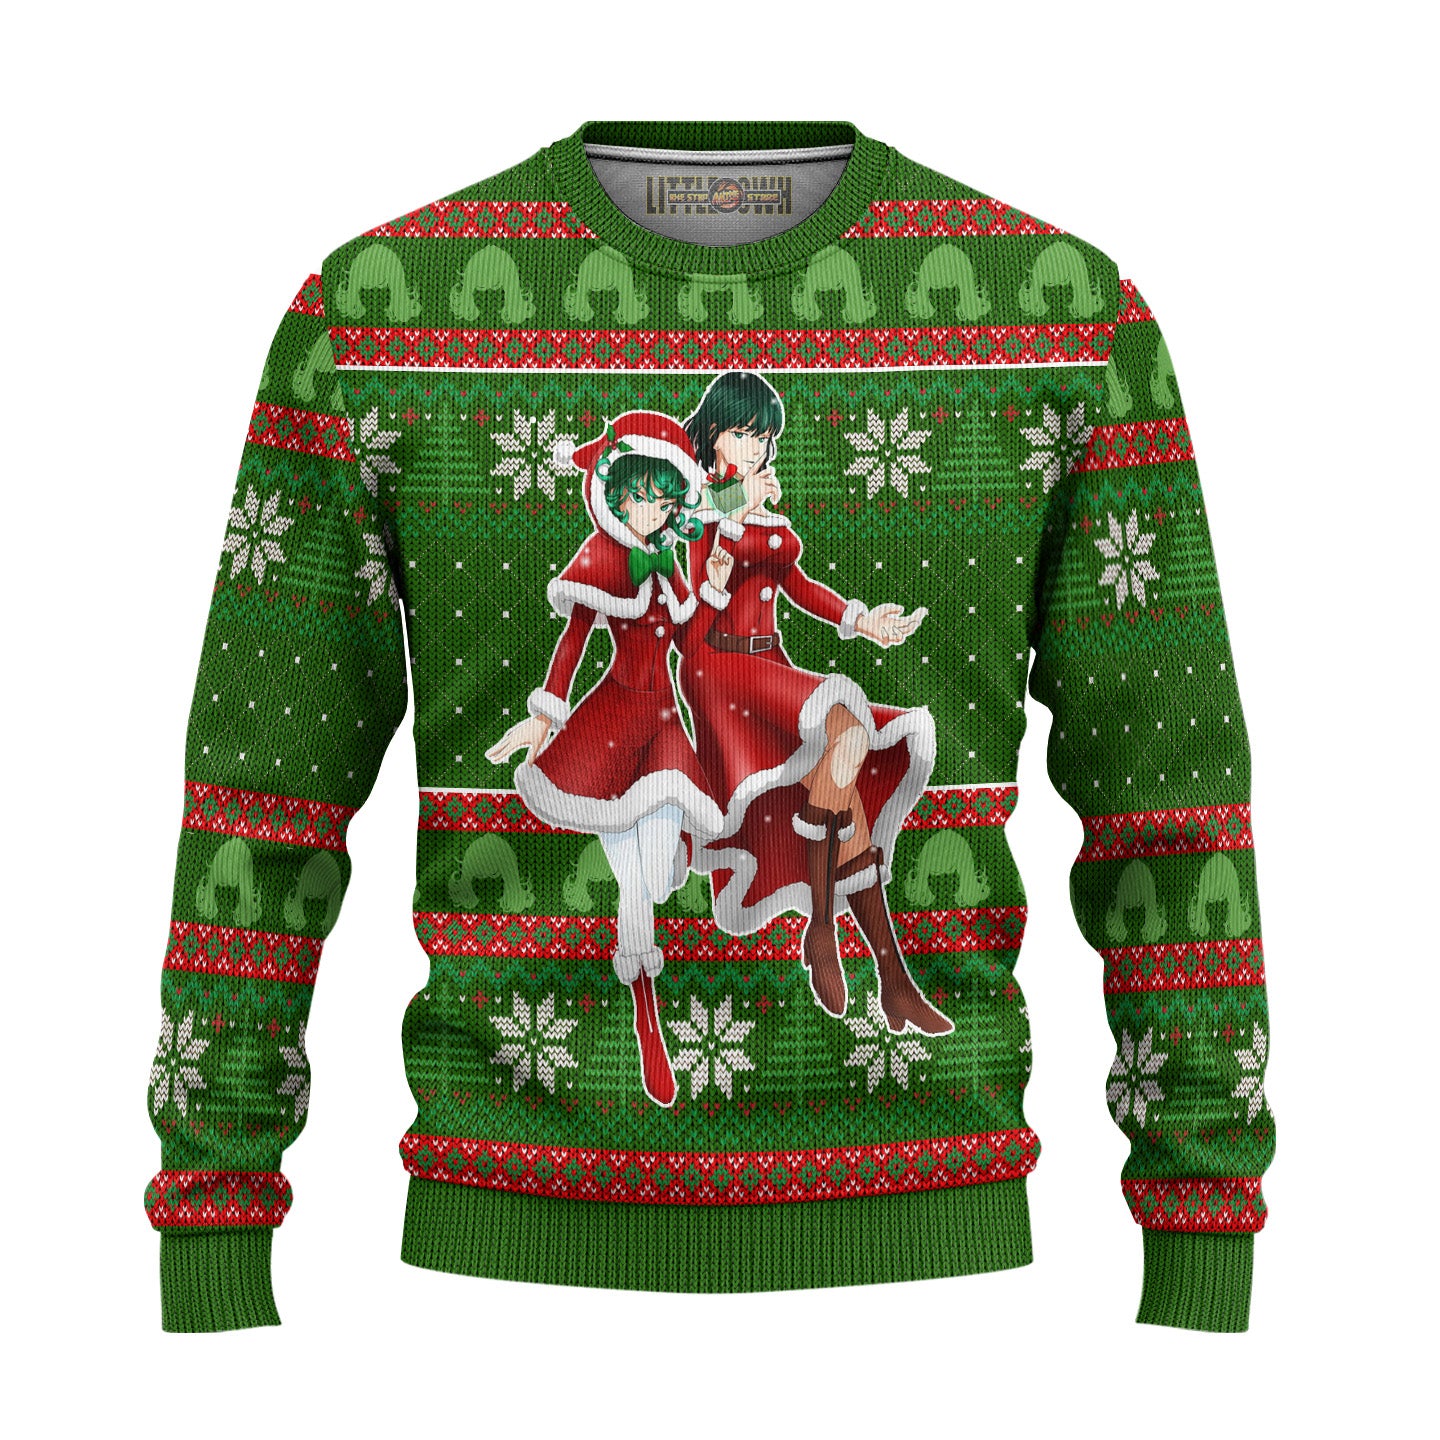 Fubuki x Tatsumaki Anime Ugly Christmas Sweater Custom One Punch Man Gift For Fans